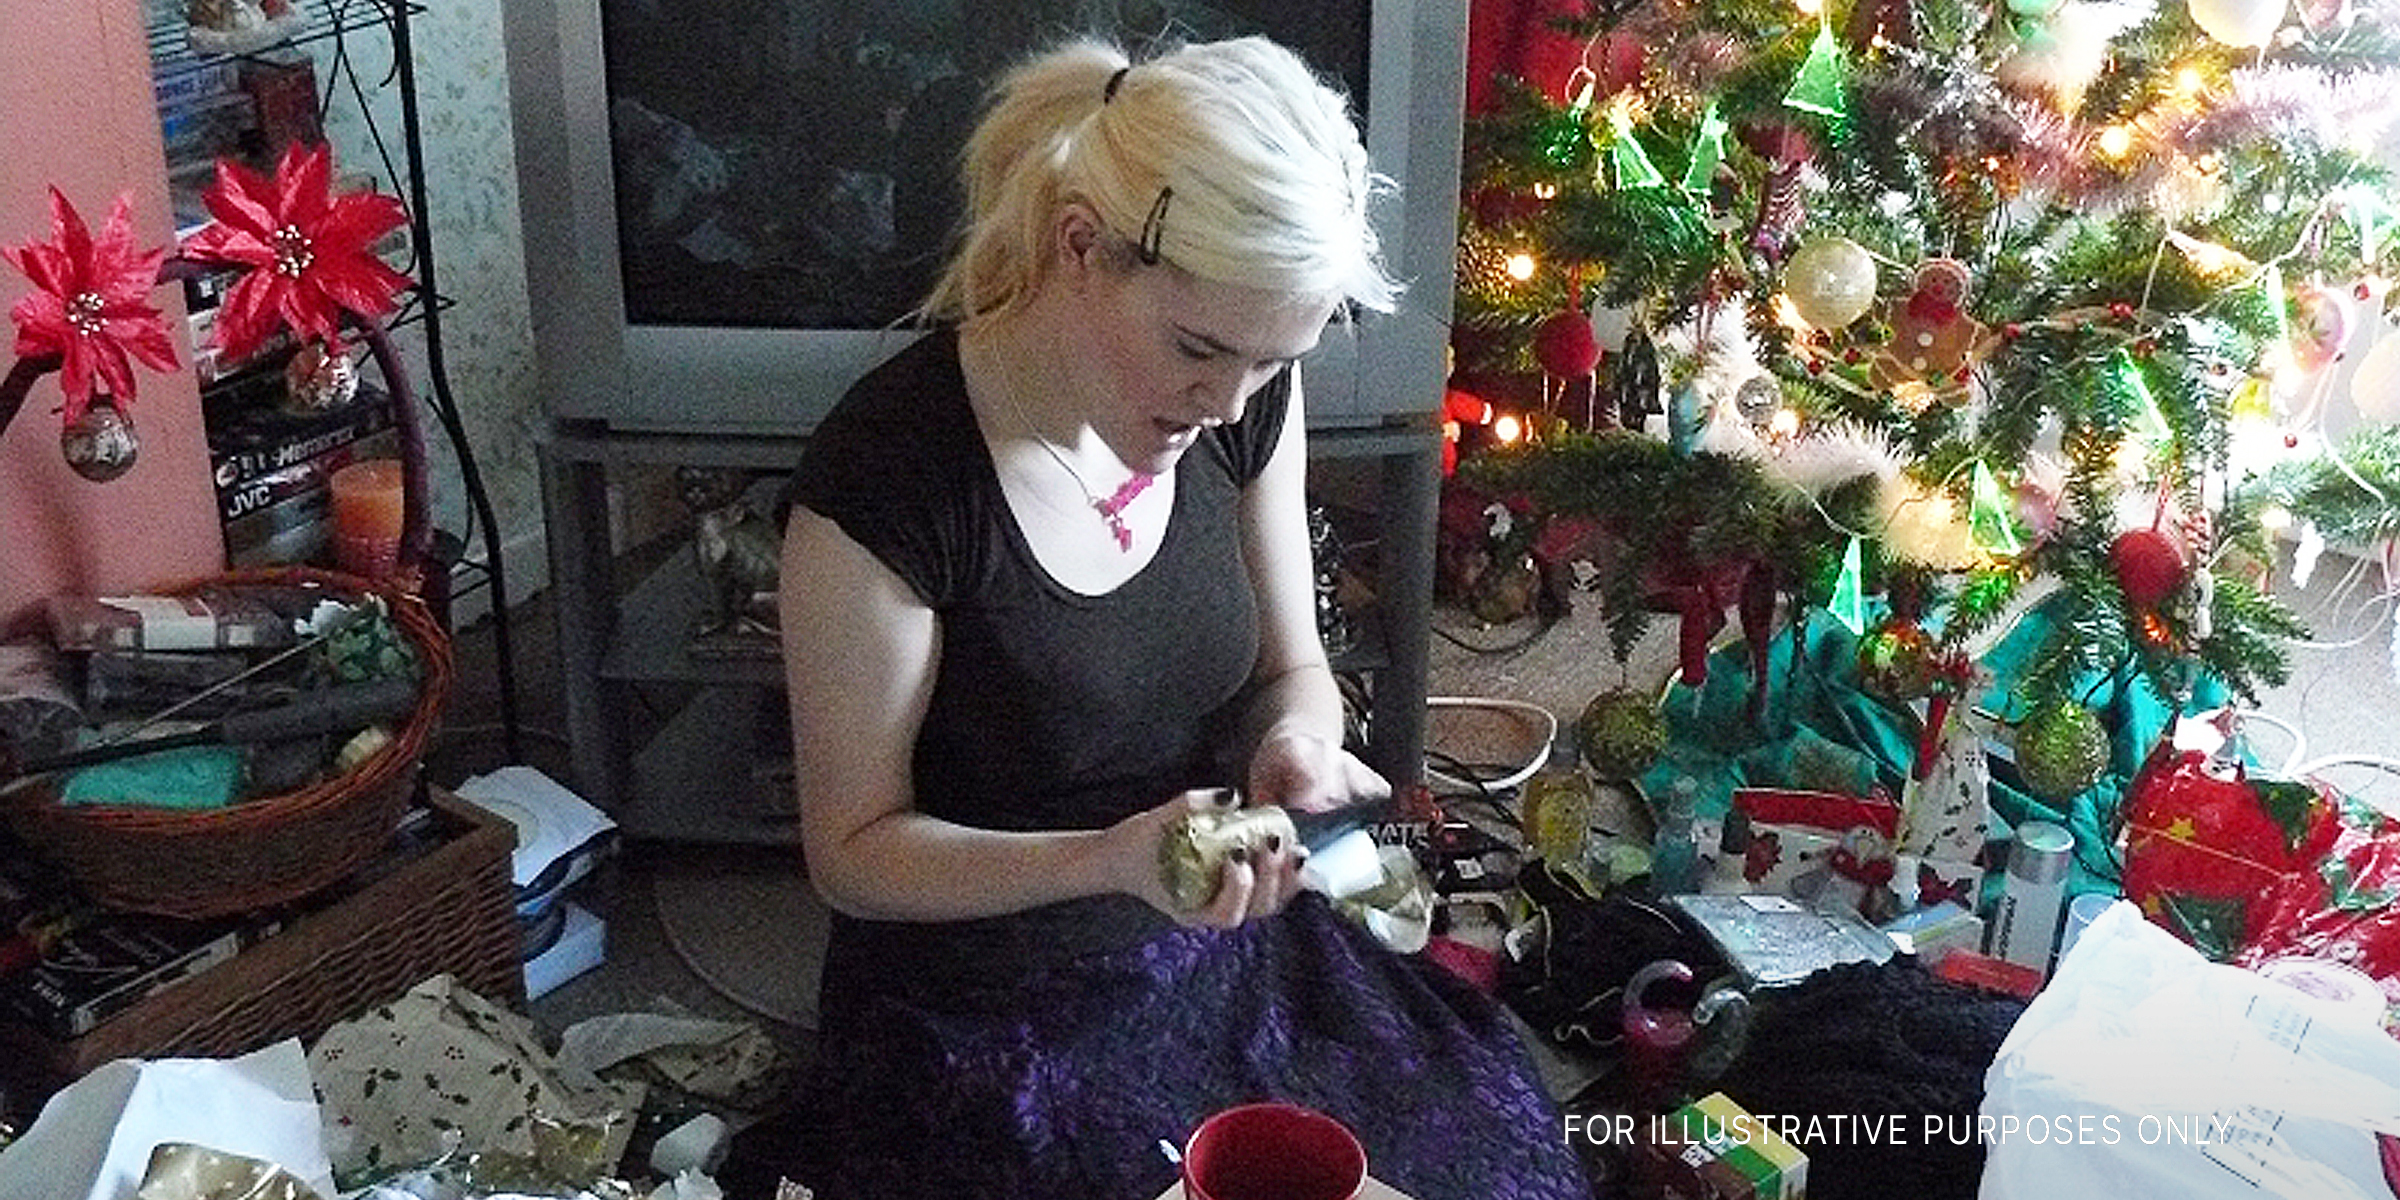 Eine junge Frau packt ein Weihnachtsgeschenk aus | Quelle: flickr.com/flem007_uk/CC BY-ND 2.0